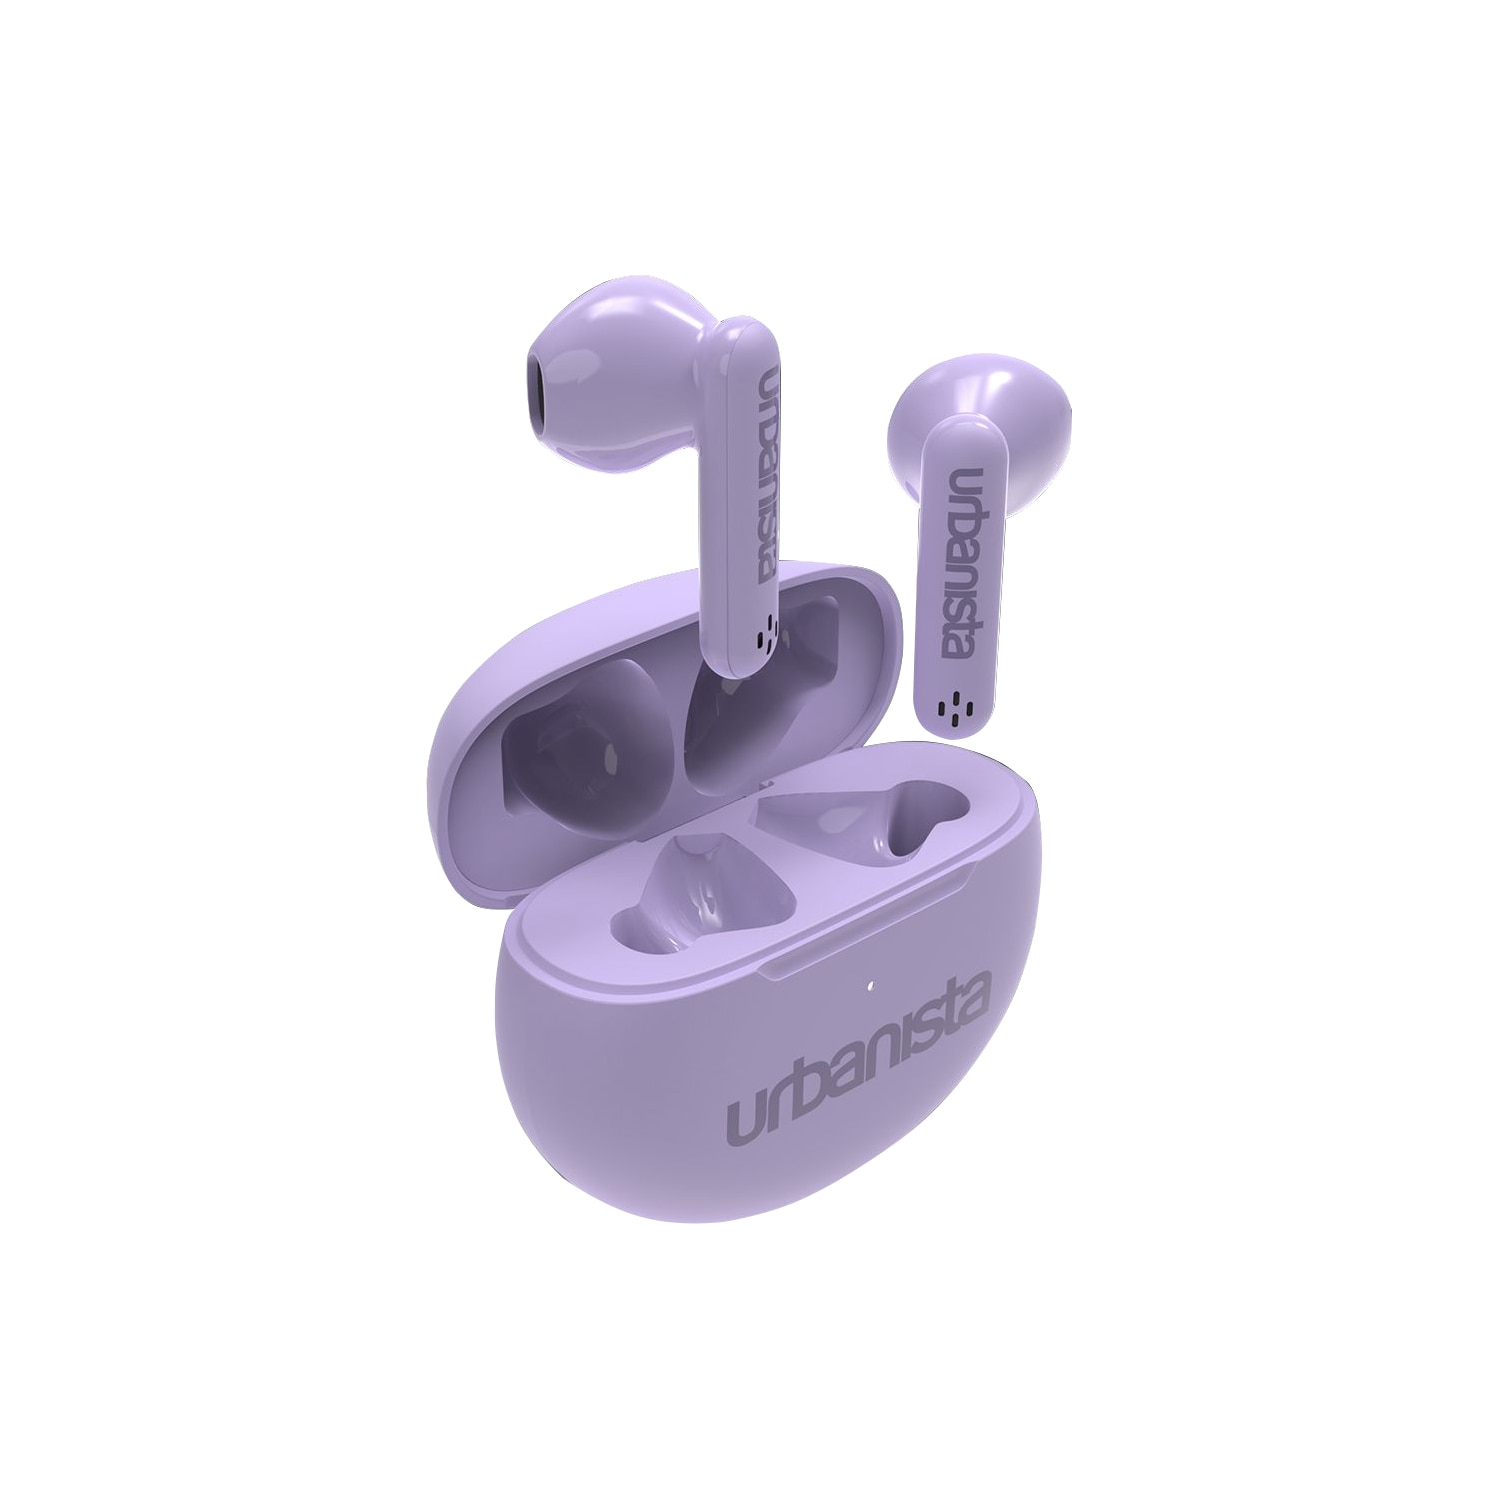 Urbanista Austin True Wireless Earbuds- Lavender Purple